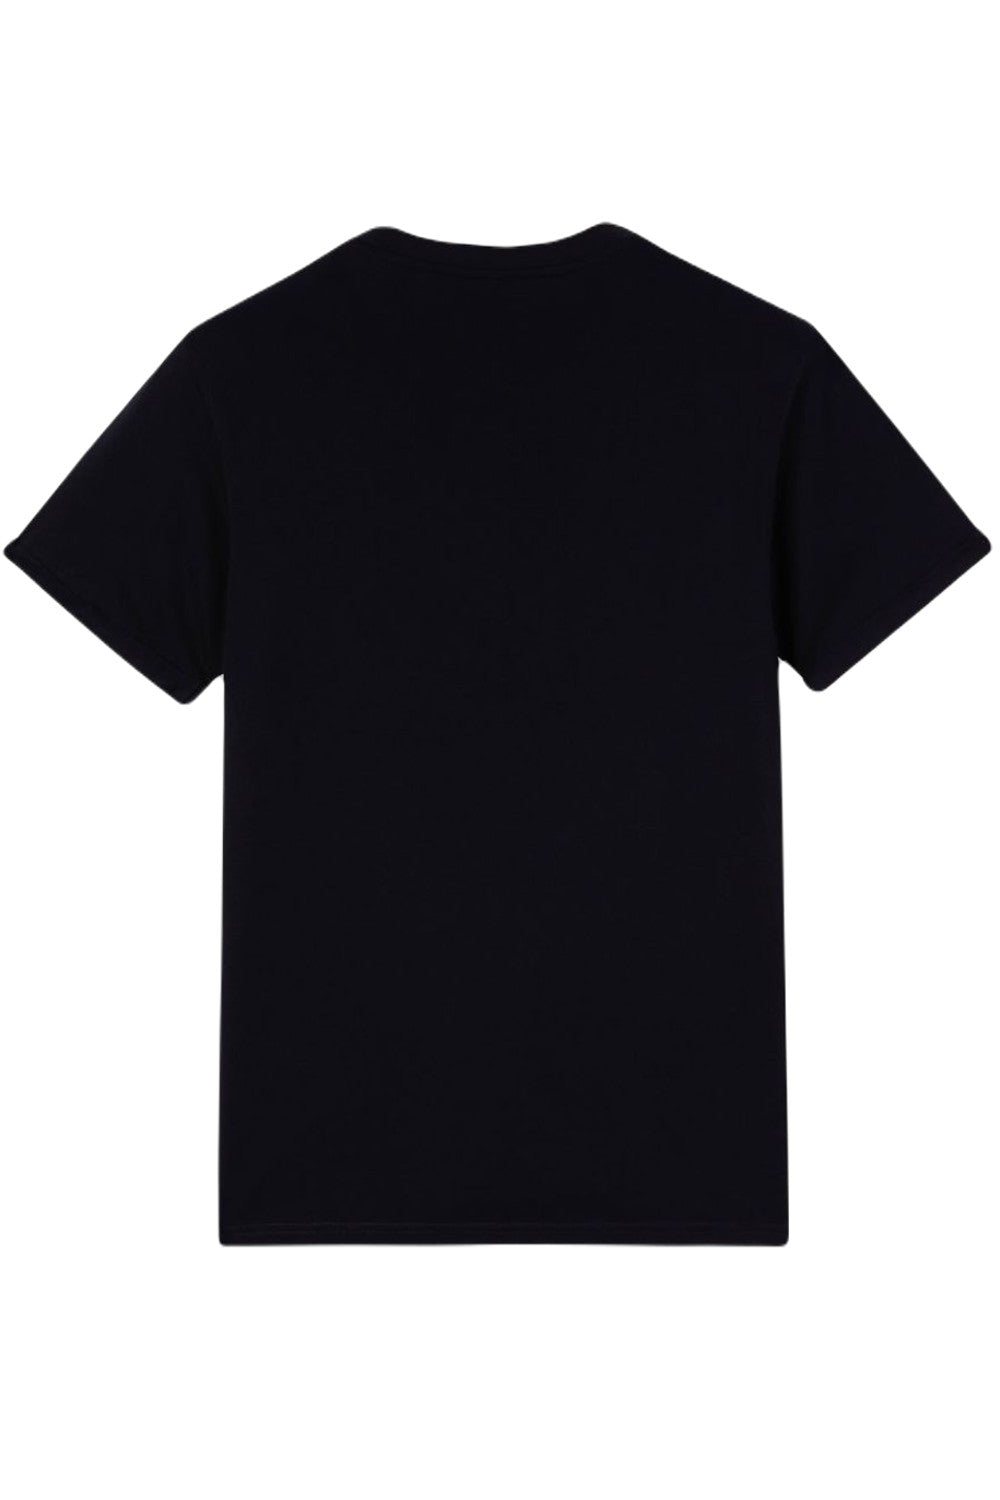 Dickies Denison T-shirt in Black